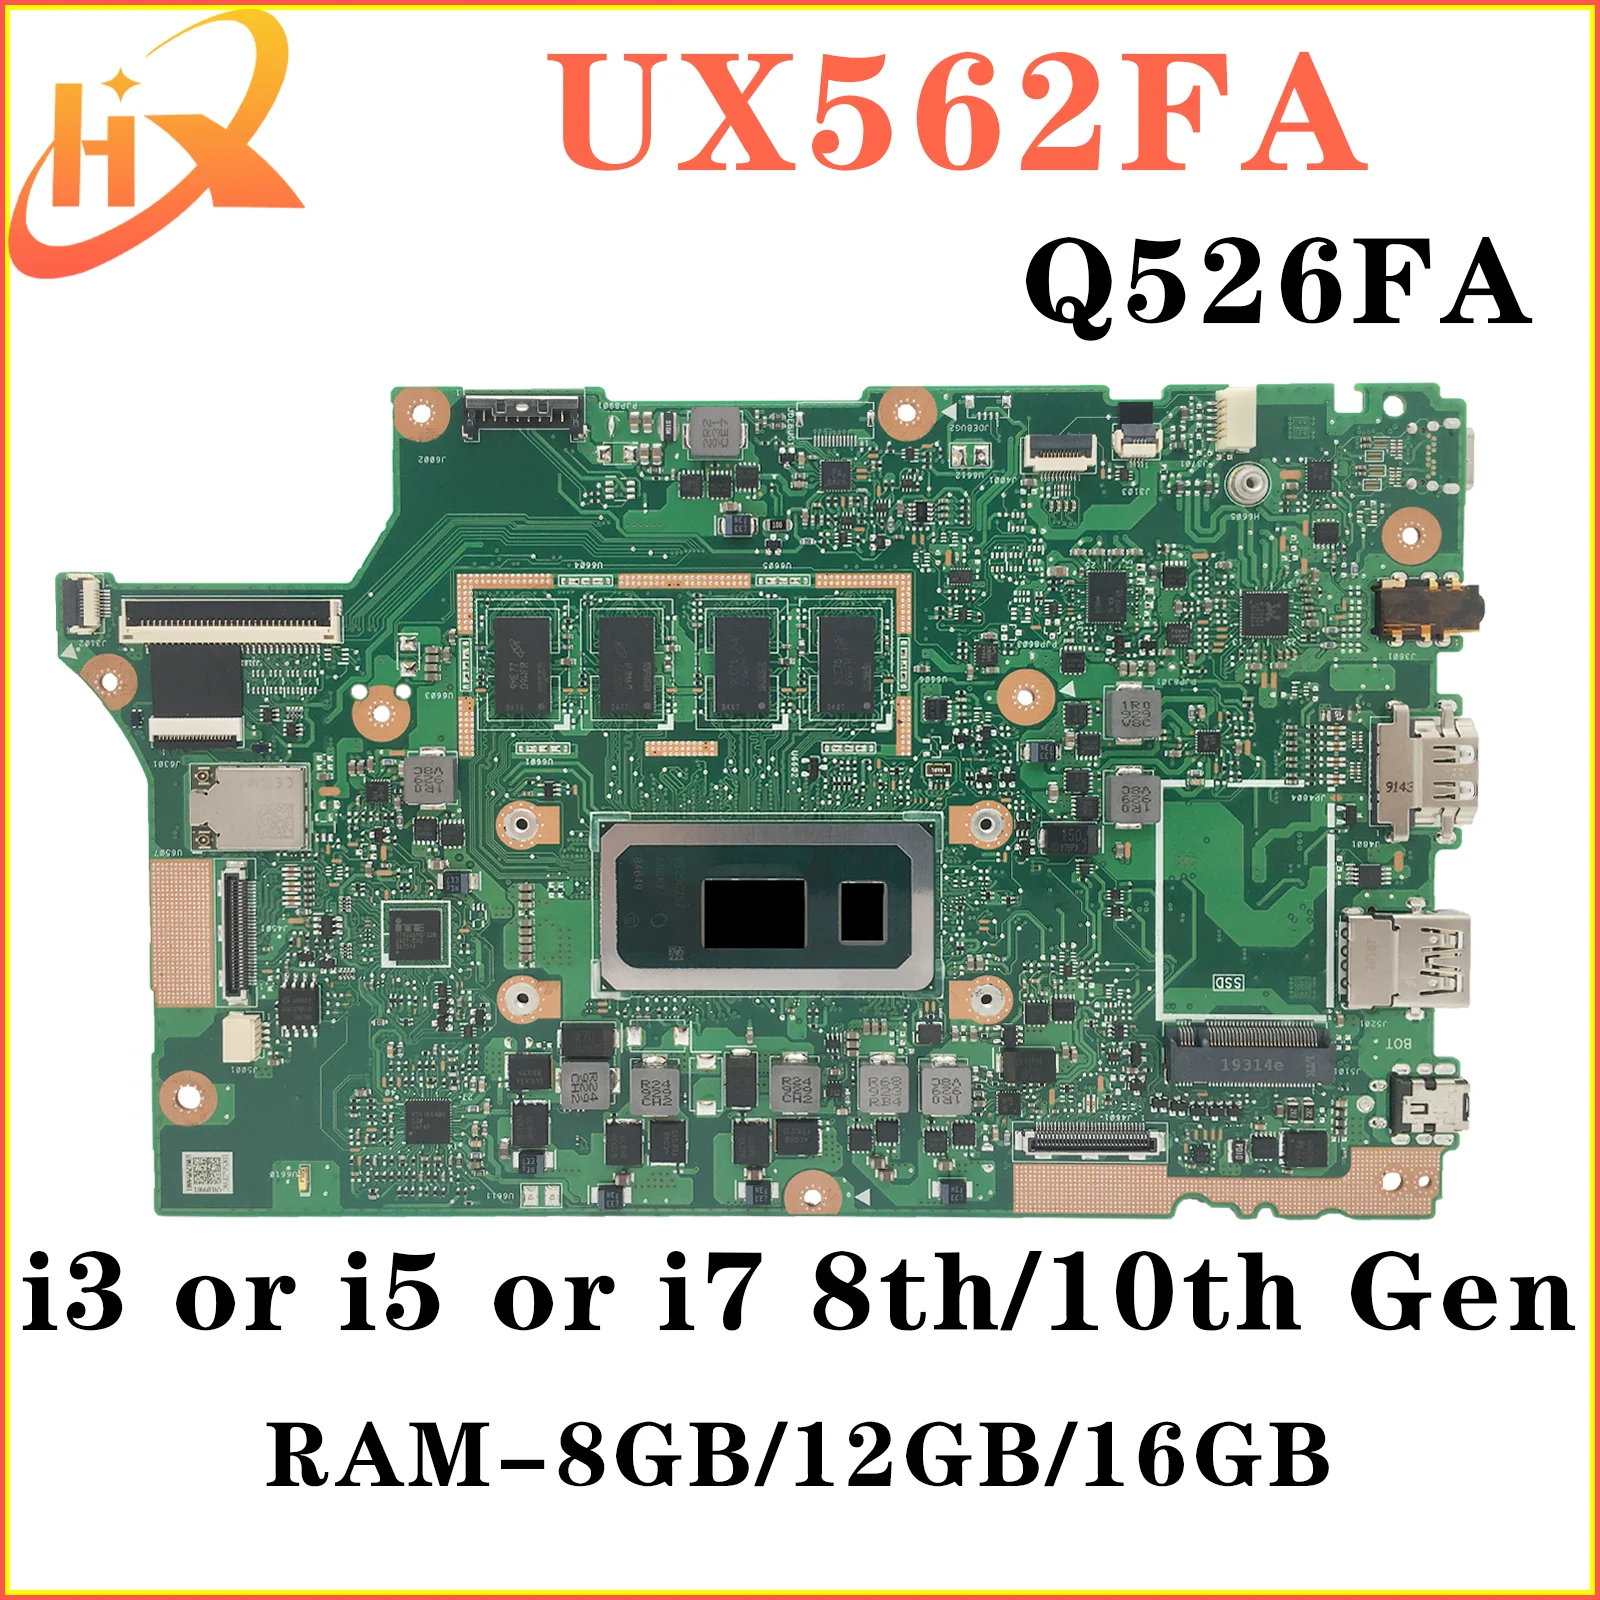 UX562FAC Материнская плата ASUS UX562FA UX562F Q526FA Q526FAC Q526F материнская плата для ноутбука i5 i7 8/10-го поколения RAM-8GB/12GB/16GB kefu ux562fac материнская плата asus zenbook flip 15 ux562fn q526fa ux562fa материнская плата для ноутбука w i5 10210u i7 10510u 12 гб ram uma